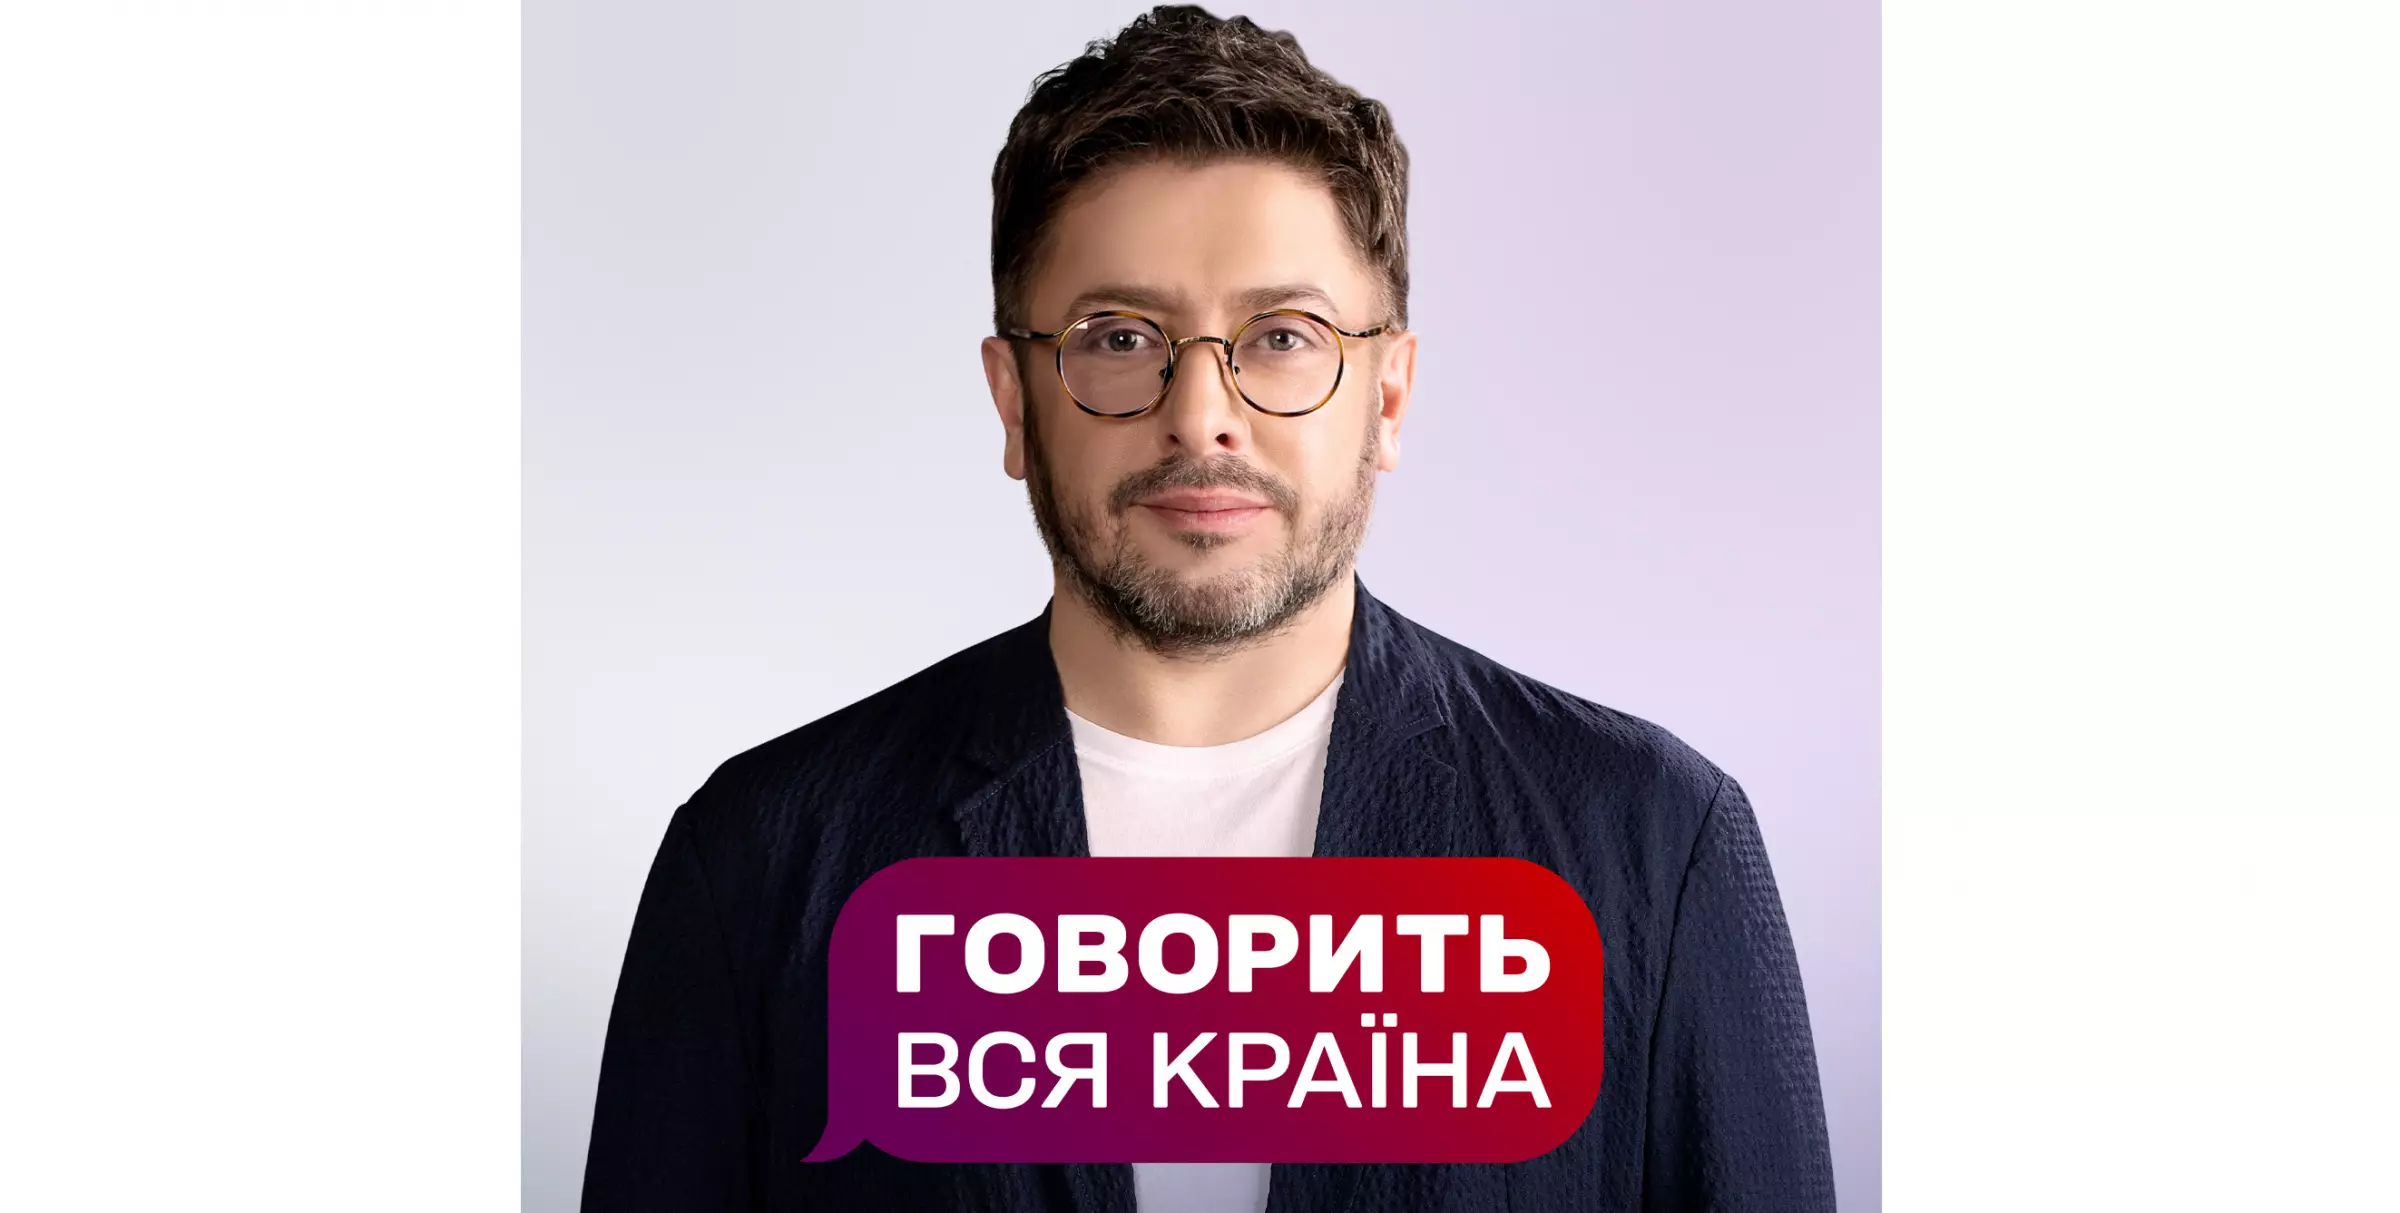 Олексій Суханов стане ведучим токшоу «Говорить вся країна» на «1+1»